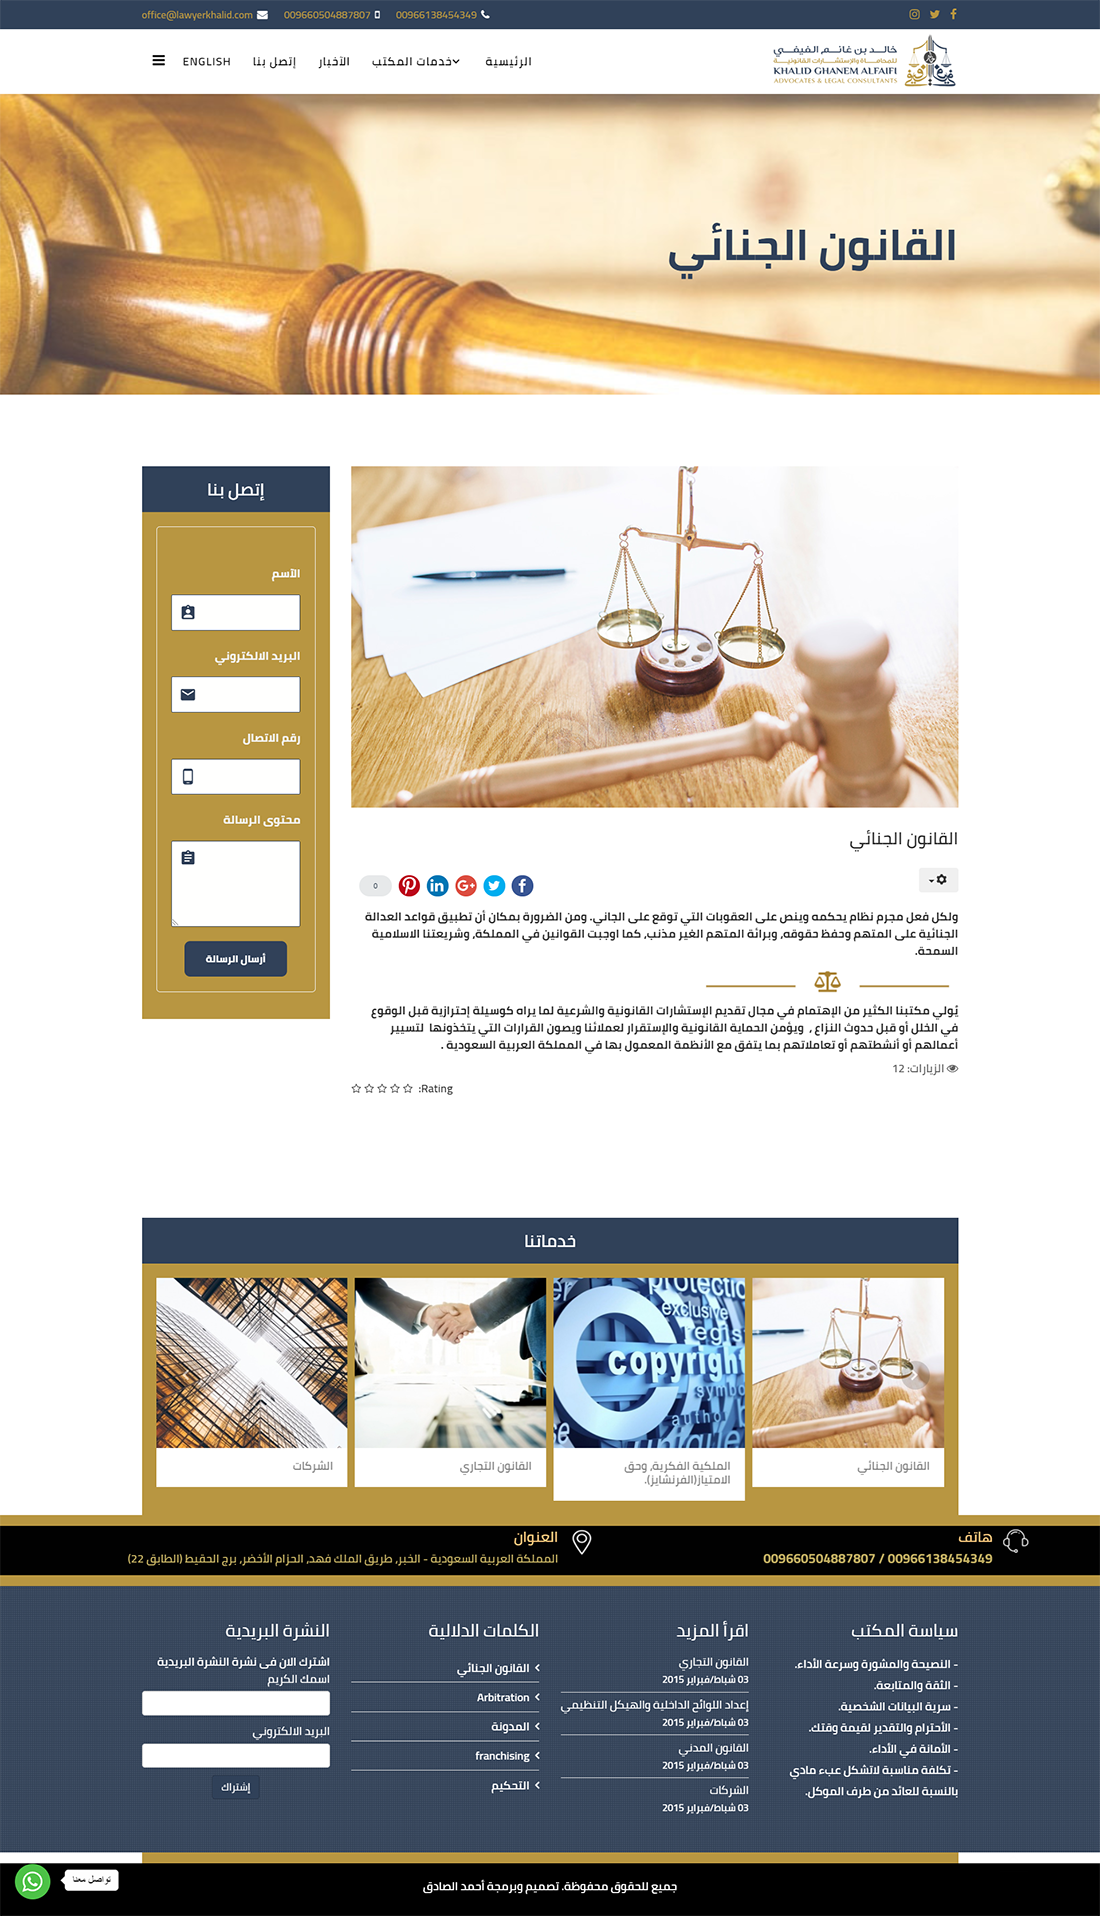 تصميم موقع الكتروني للمحامى خالد الفيفي في السعودية